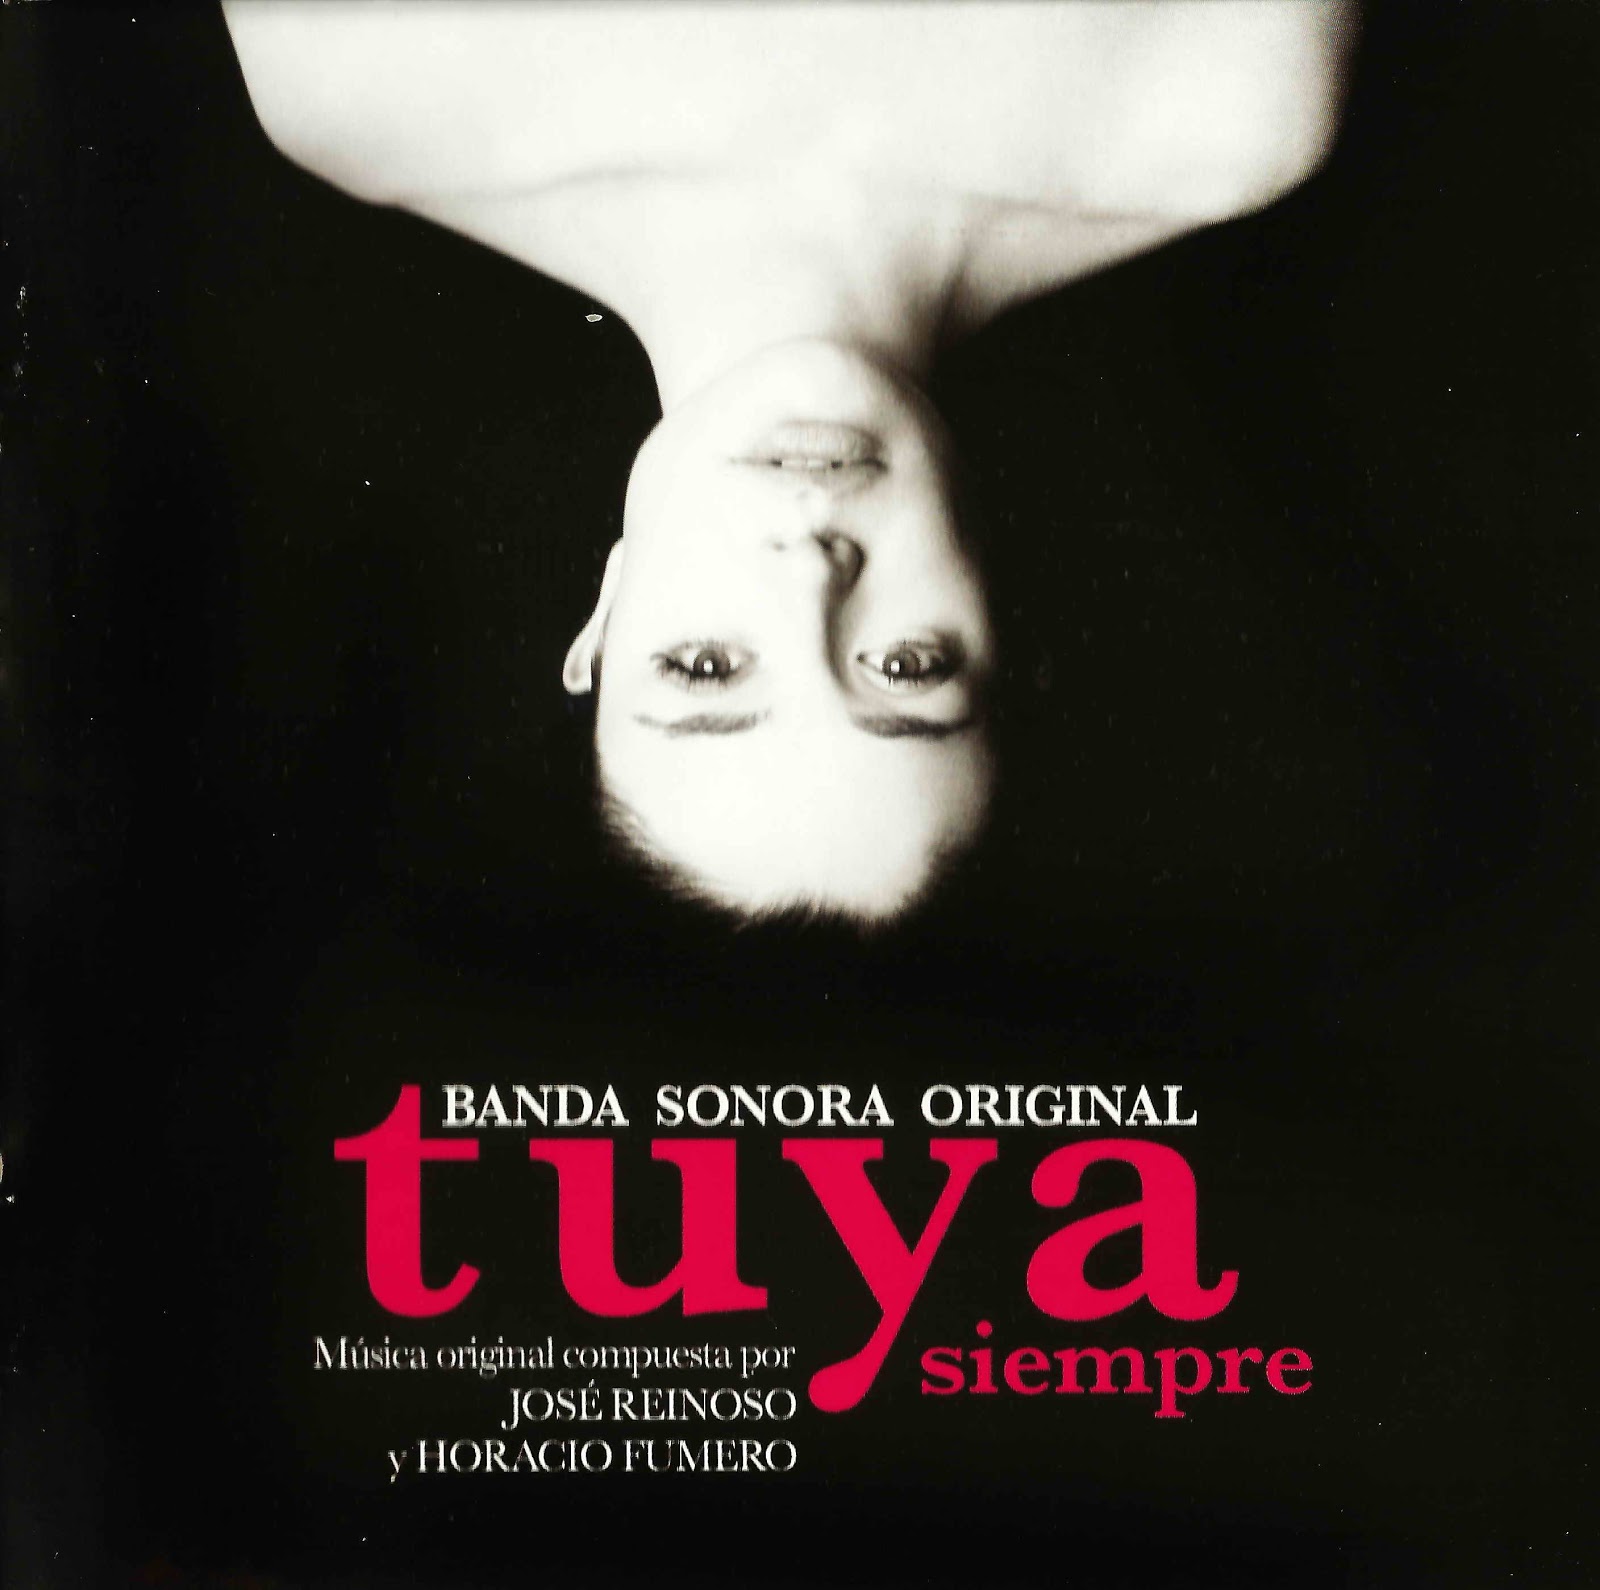 Banda Sonora Original: Tuya Siempre (José Reinoso 